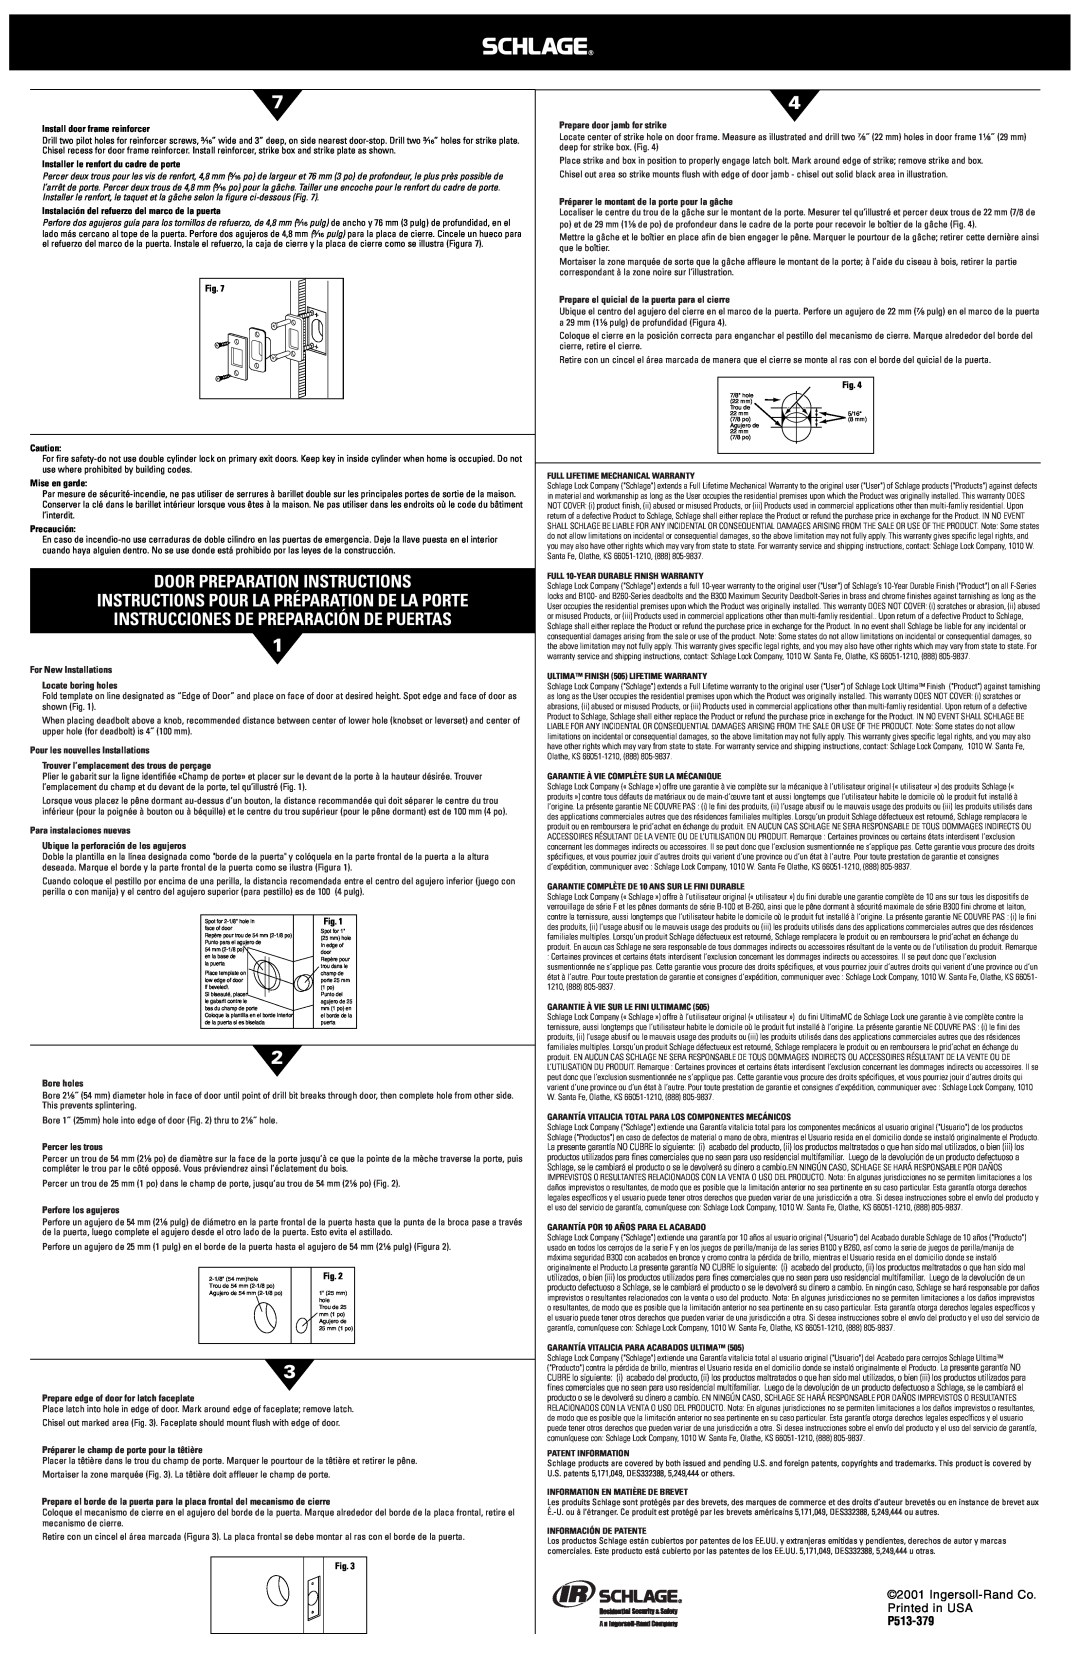 Schlage BR262, BR260 Door Preparation Instructions, Instrucciones De Preparación De Puertas, Ingersoll-RandCo, P513-379 